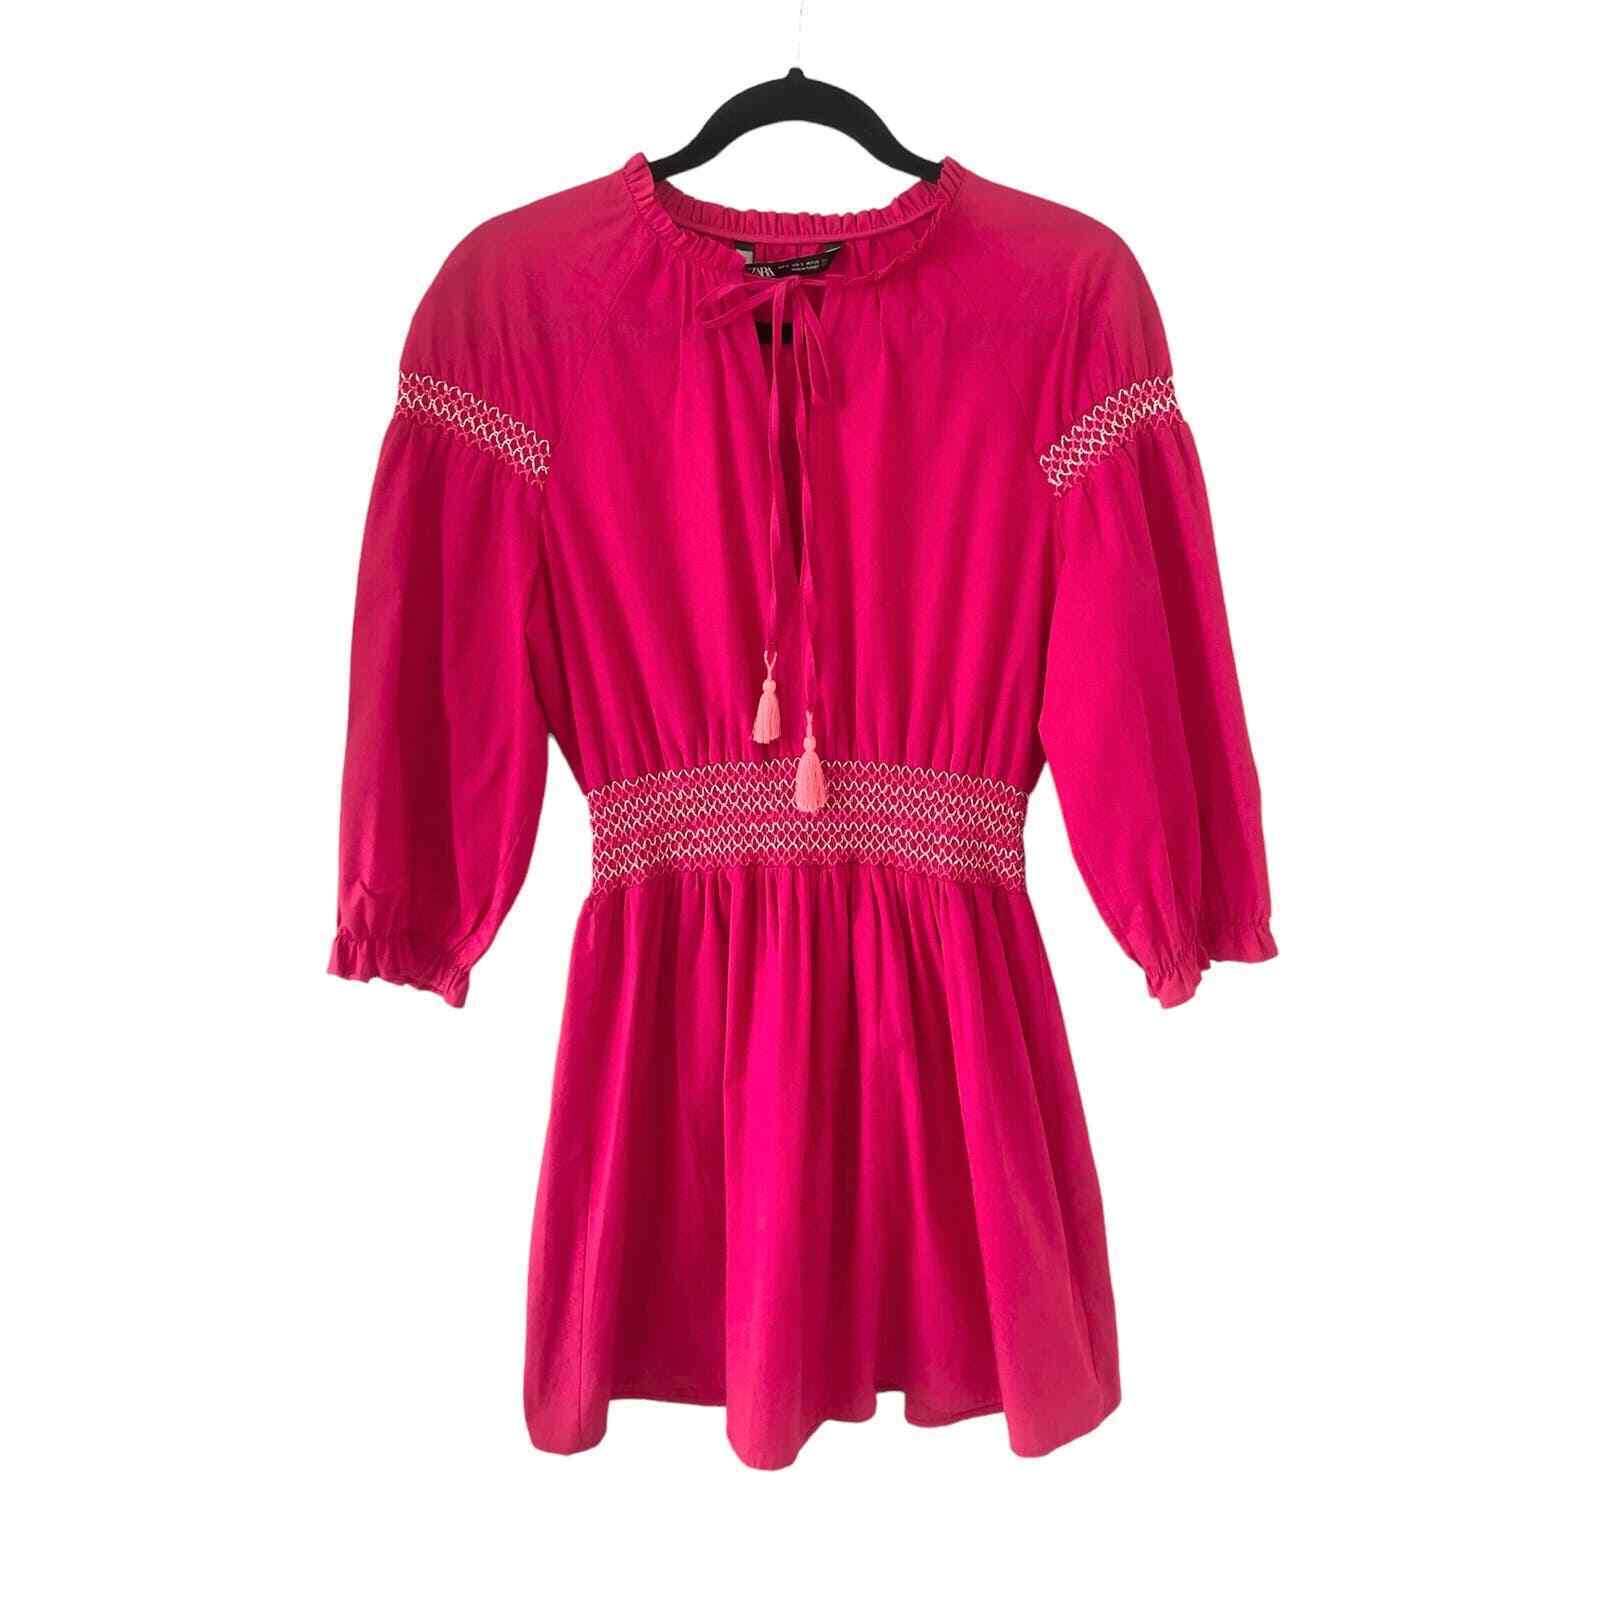 ZARA 100% Cotton Pink Mini Dress with Tassels Siz… - image 1